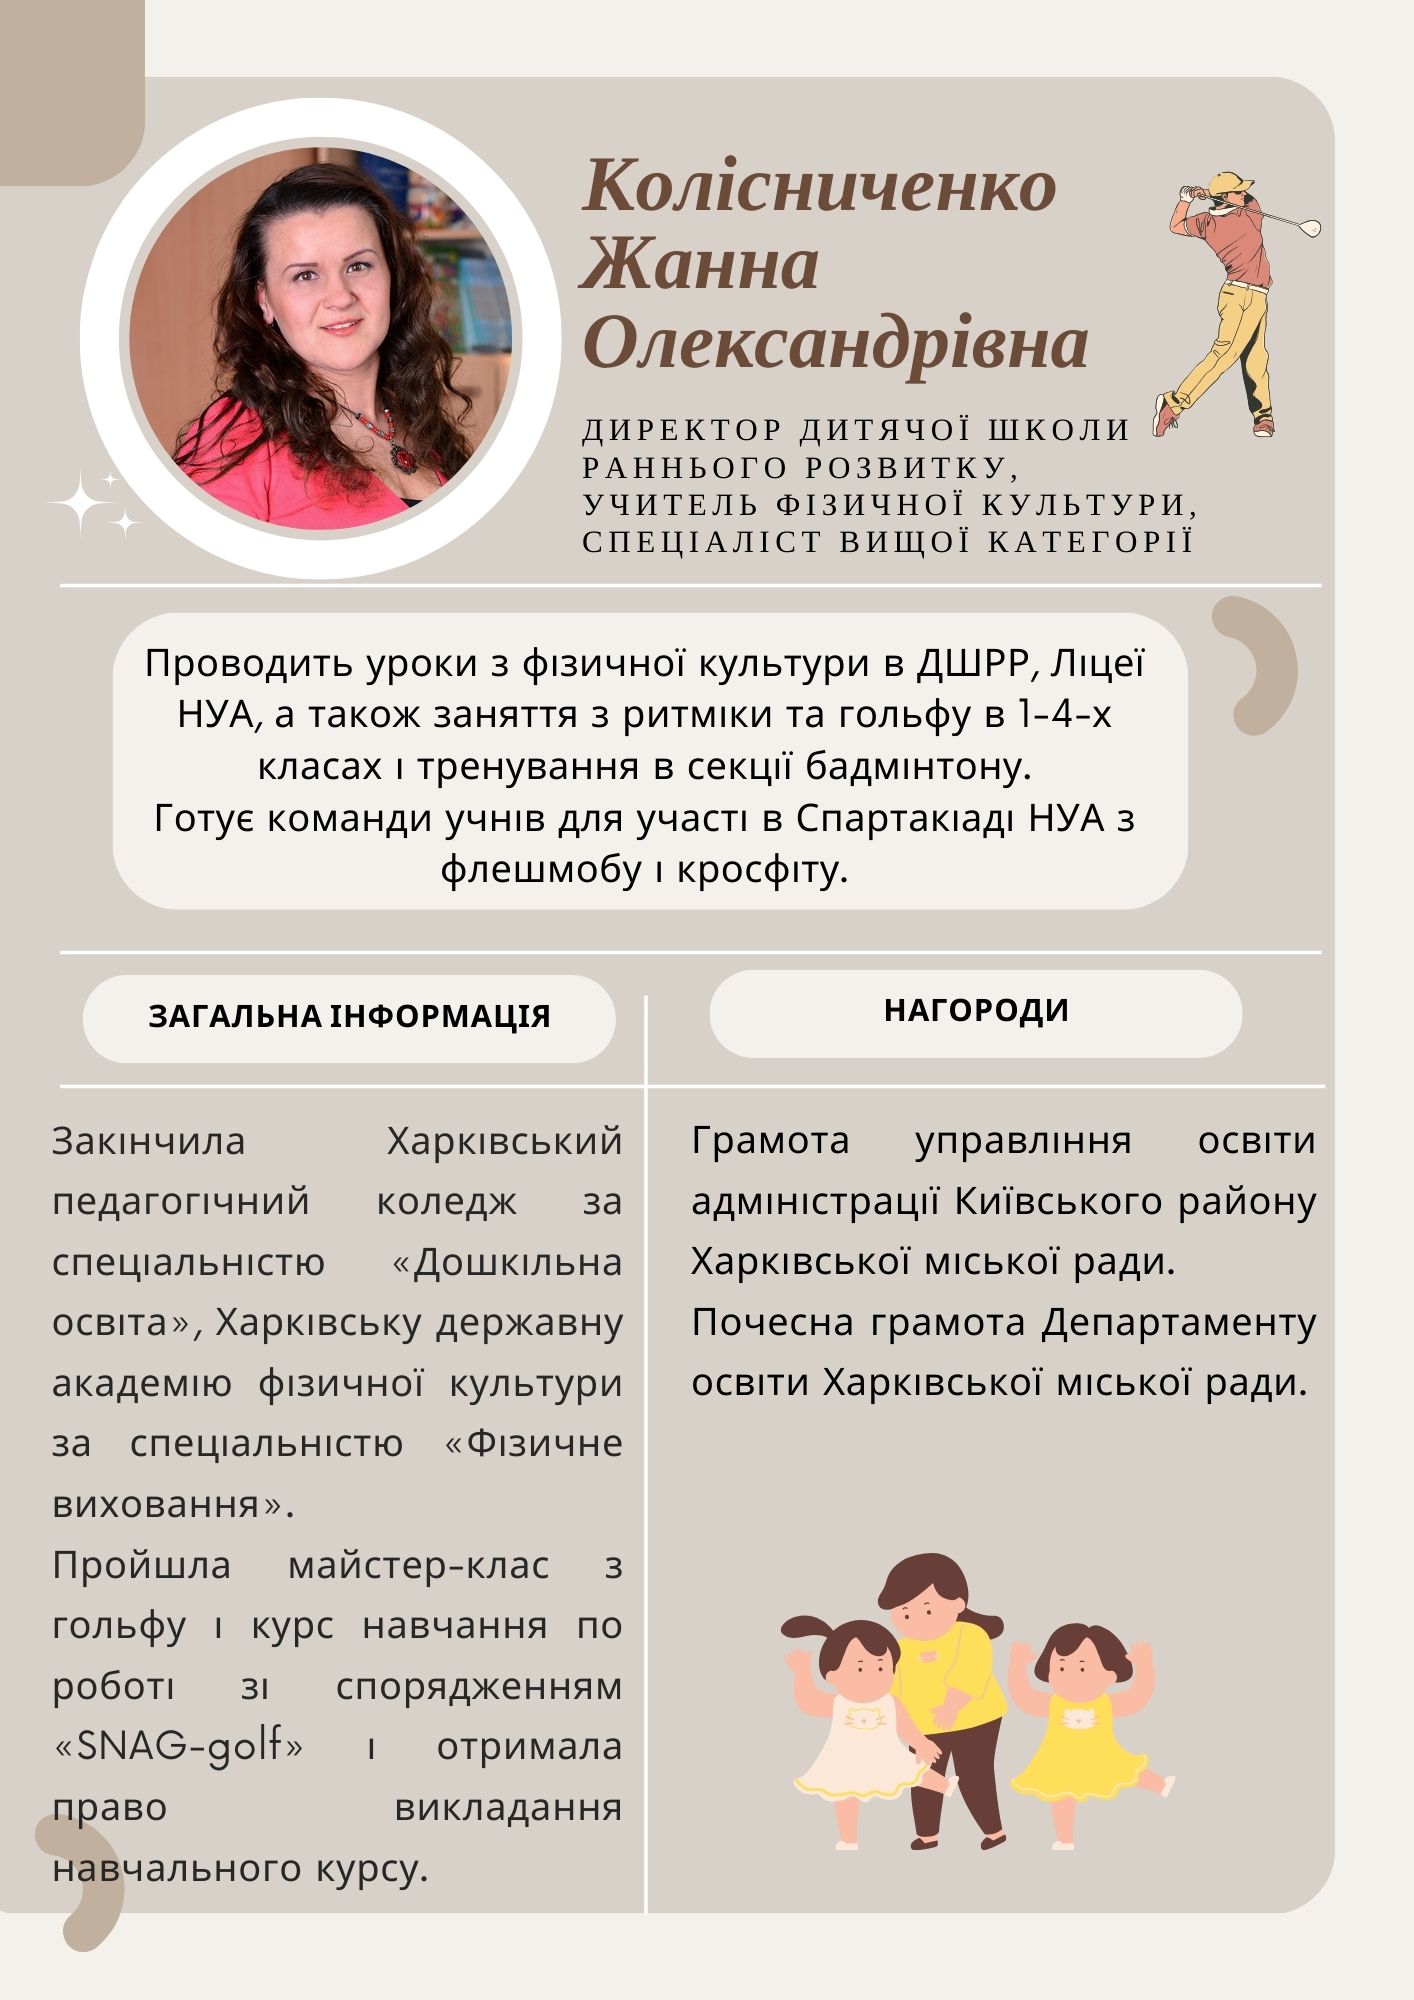 Колісниченко Жанна Олександрівна, вчитель фізичної культури, спеціаліст  вищої категорії